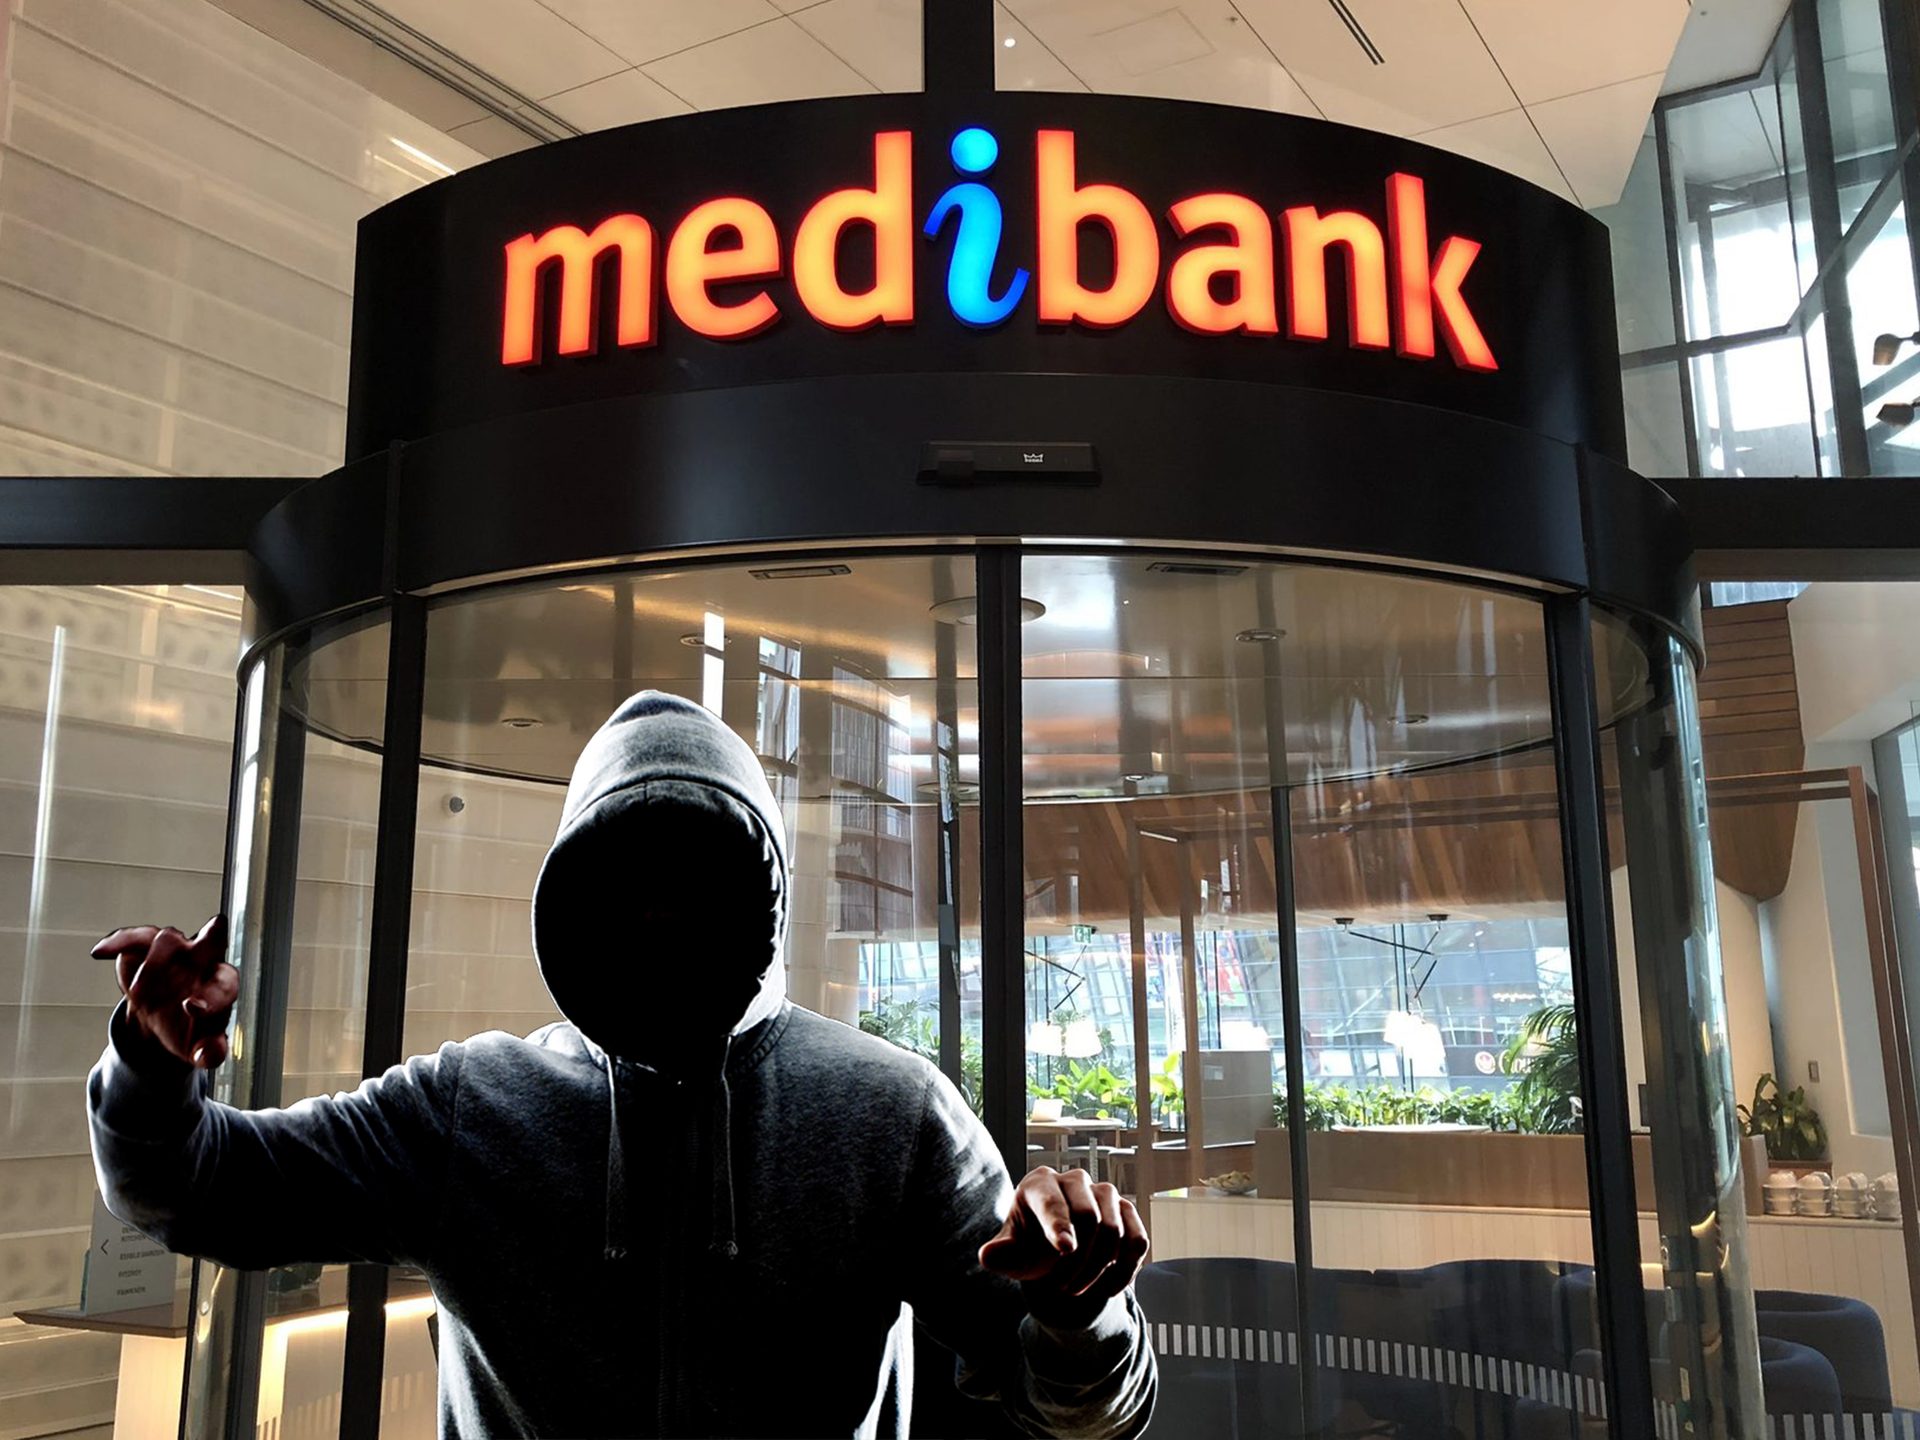 Medibank class action uitgelegd: denk aan het datalek van Medibank, sluit u aan bij de Medibank class action voor datalekken en ontvang een Medibank-vergoeding van maximaal $ 20,000.